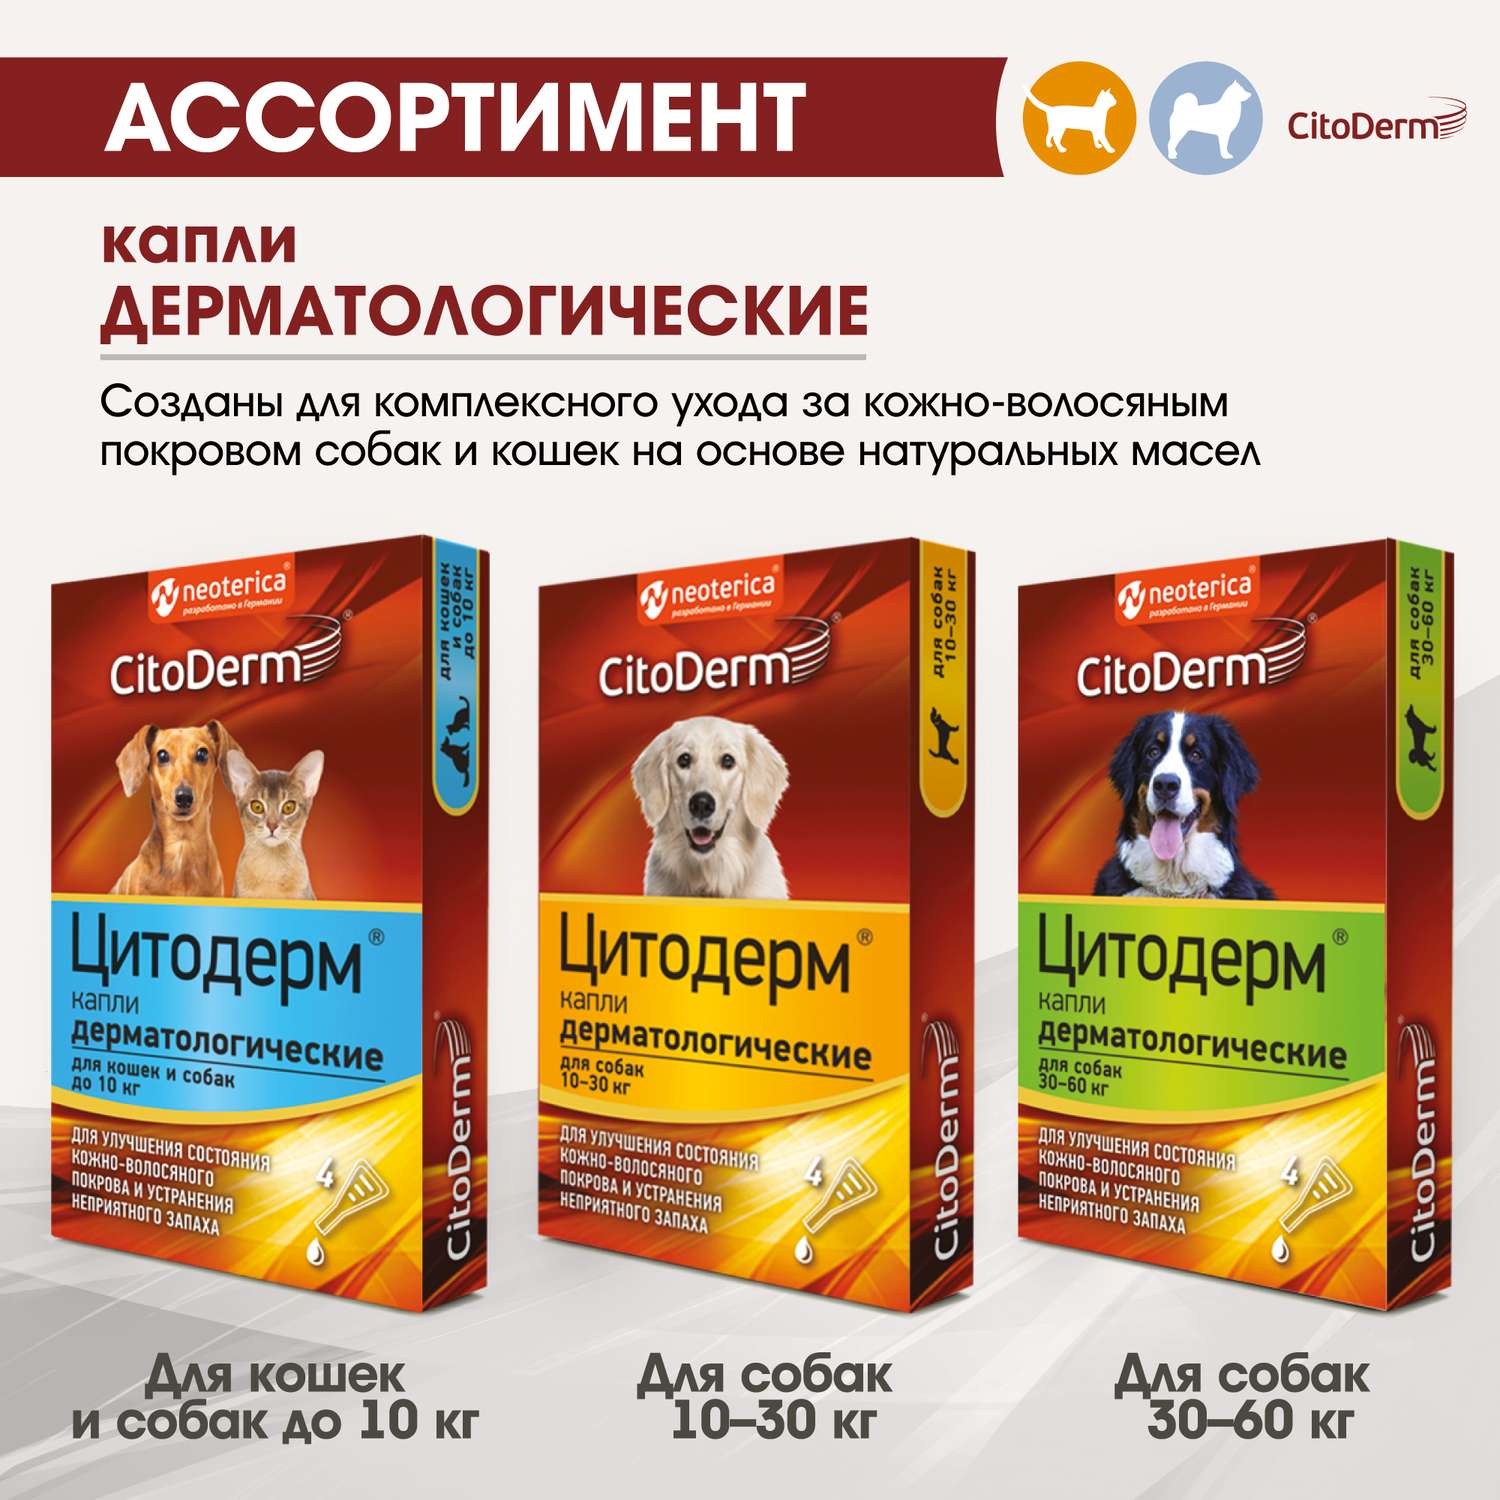 Капли для собак CitoDerm 30-60кг дерматологические 6мл - фото 7